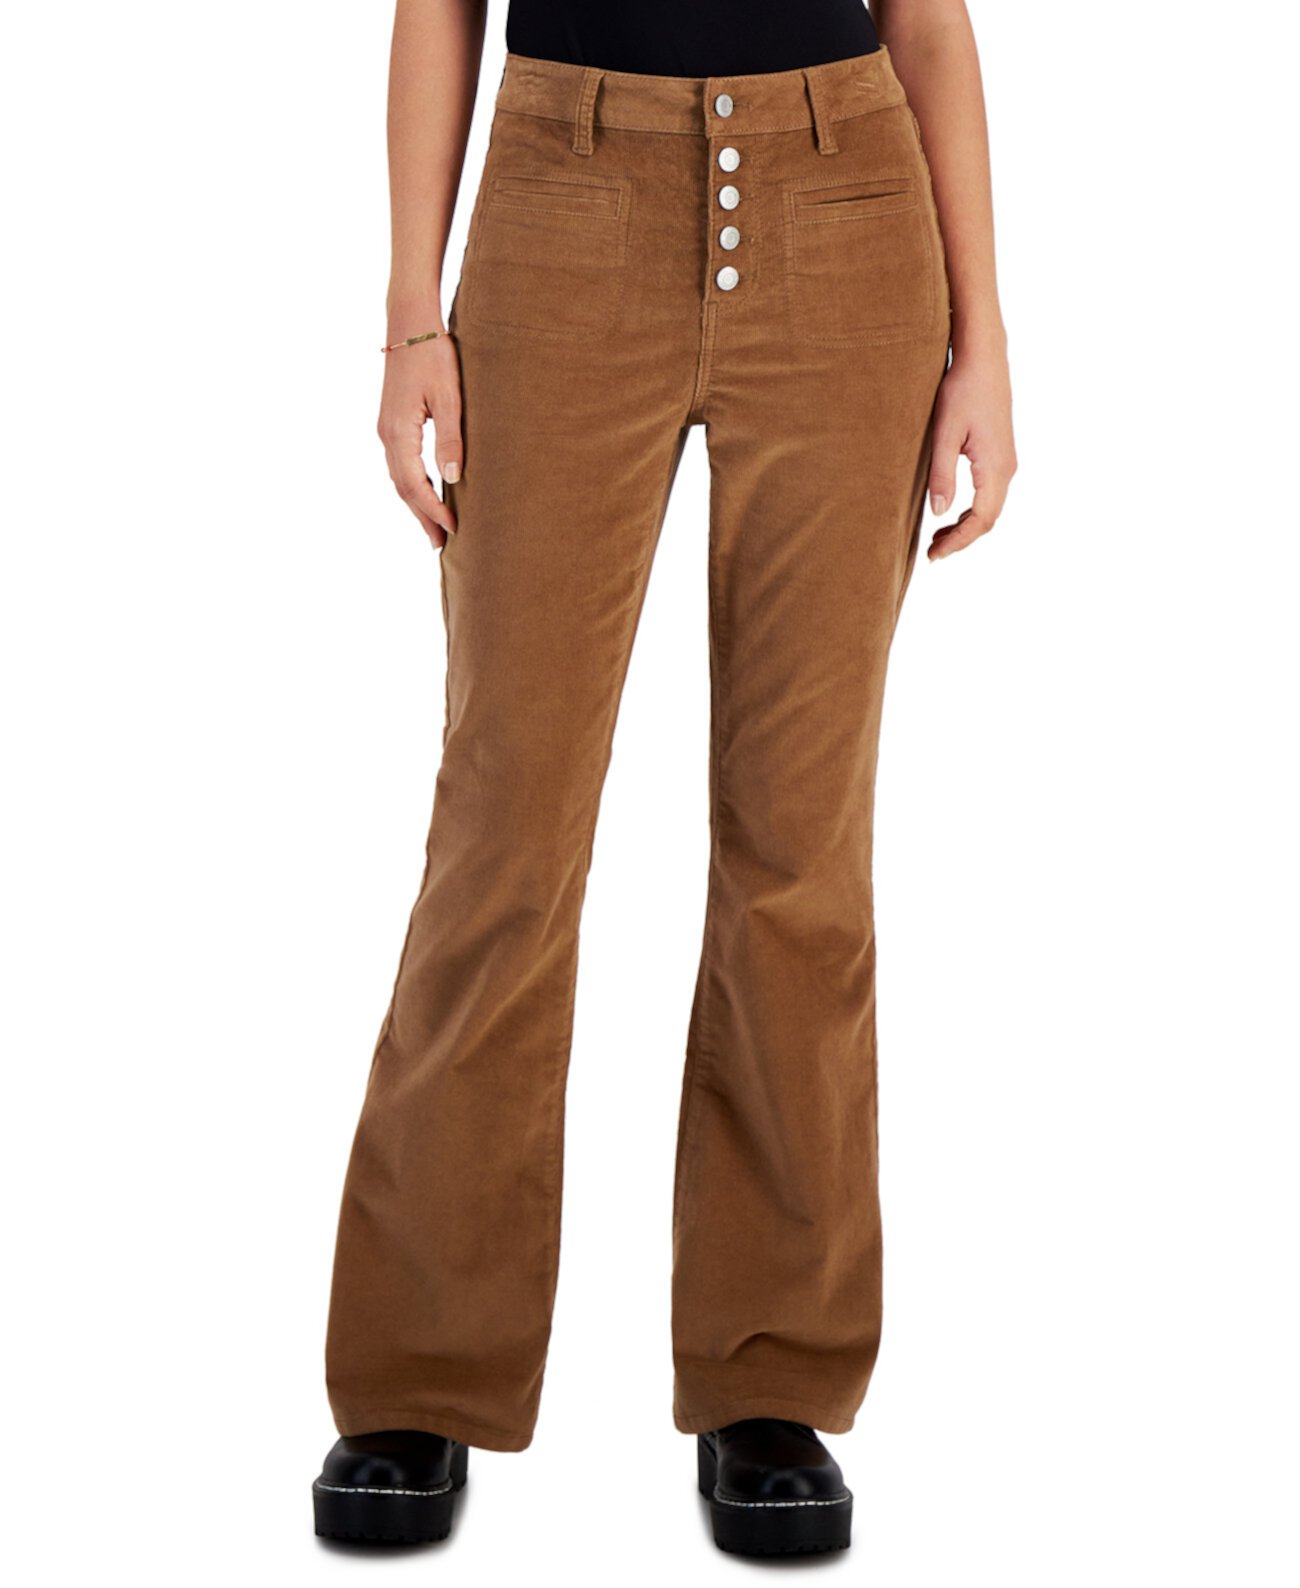 Вельветовые брюки с высокой посадкой и пуговицами для юниоров Vanilla Star